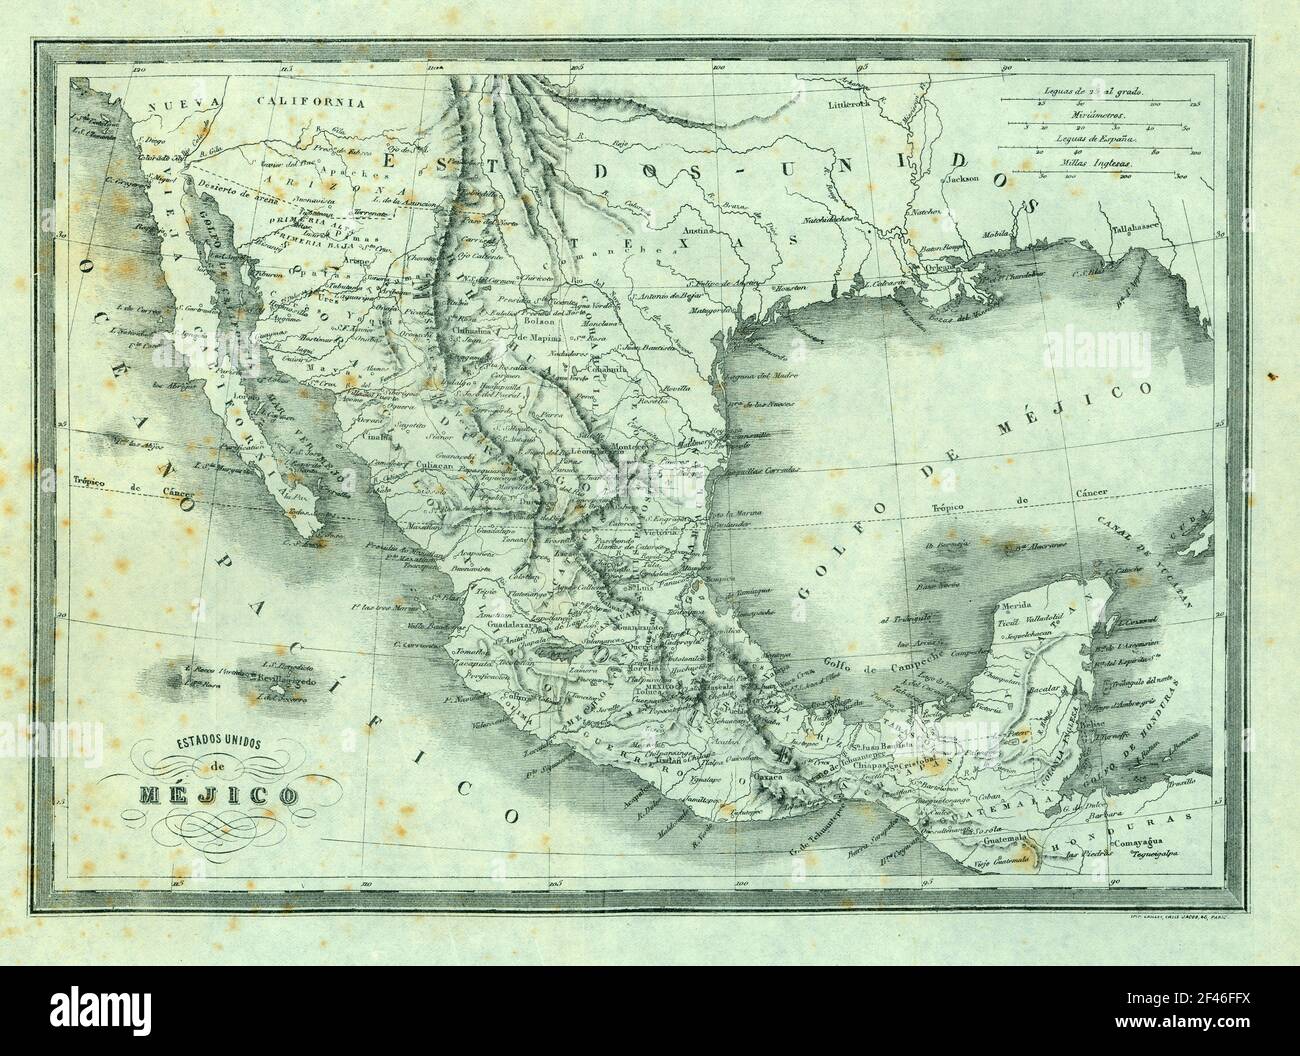 Mapa físico-político de los Estados Unidos de Méjico. Grabado de 1870. Stock Photo